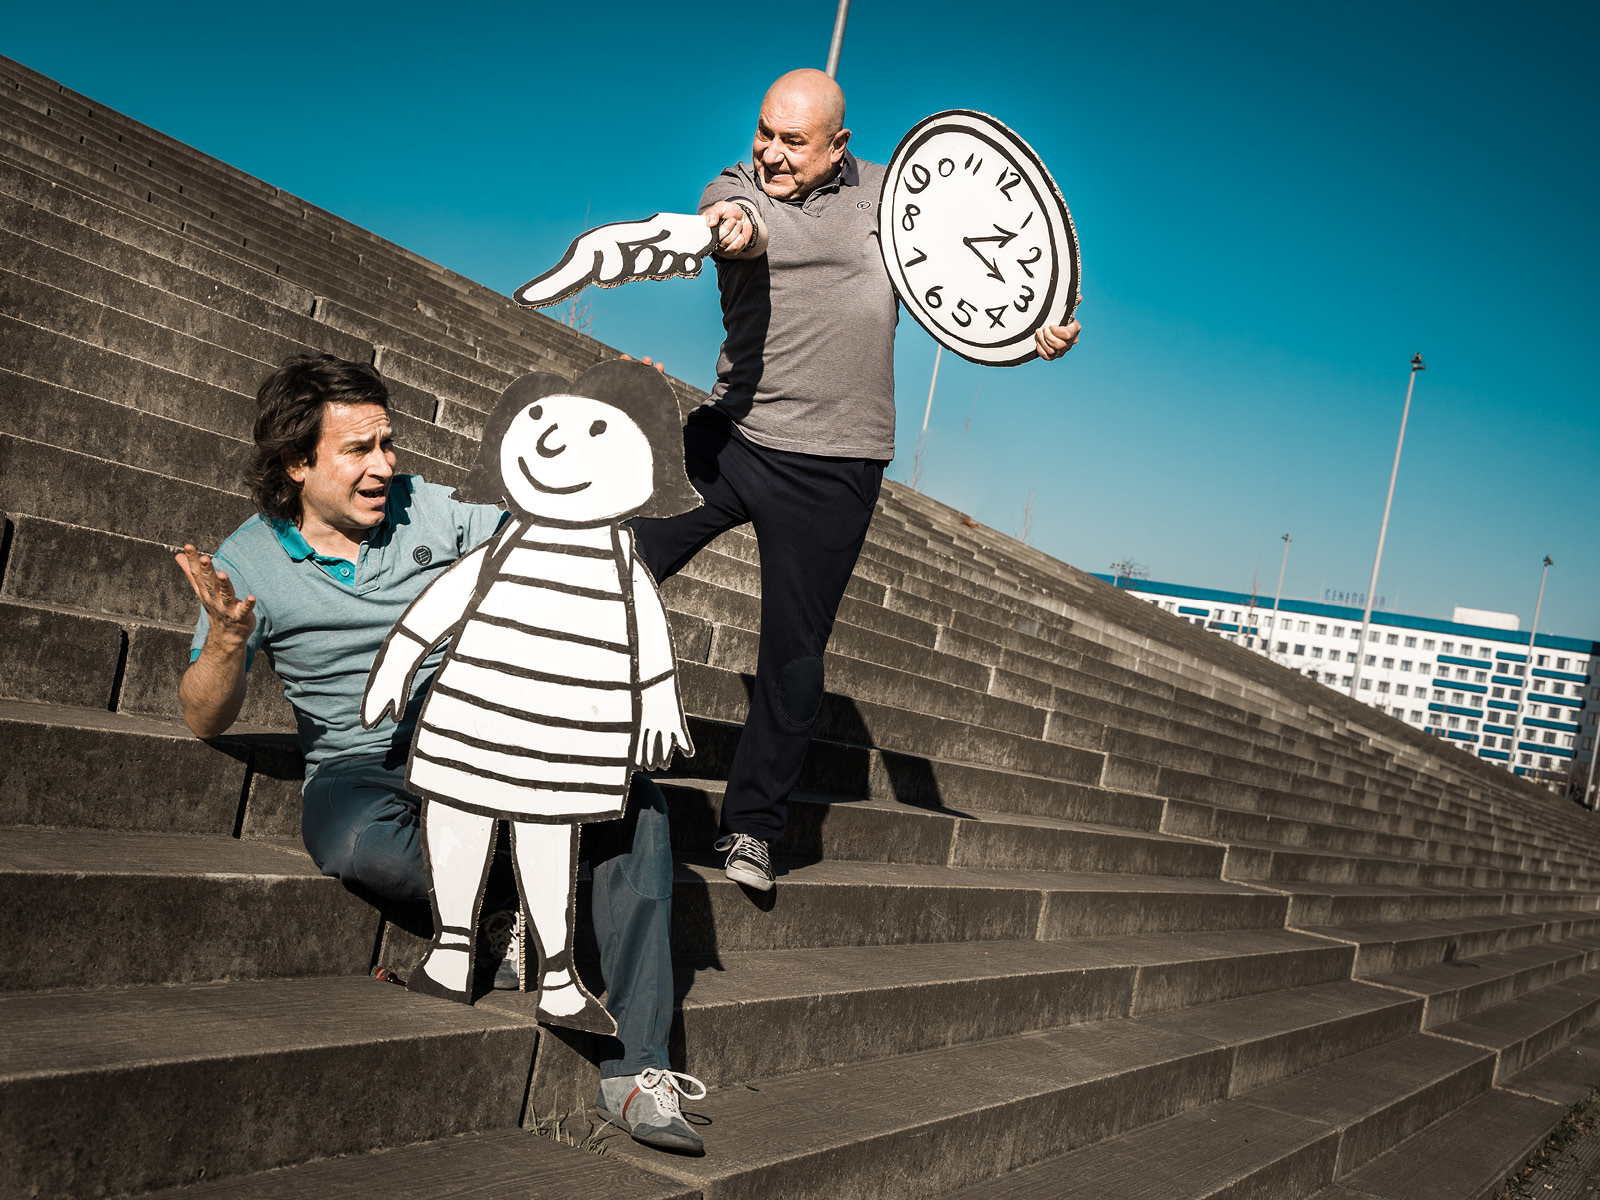 Zwei Spieler mit einer lebensgroßen Flachfigur und einer Uhr aus Papier auf Treppen posierend.